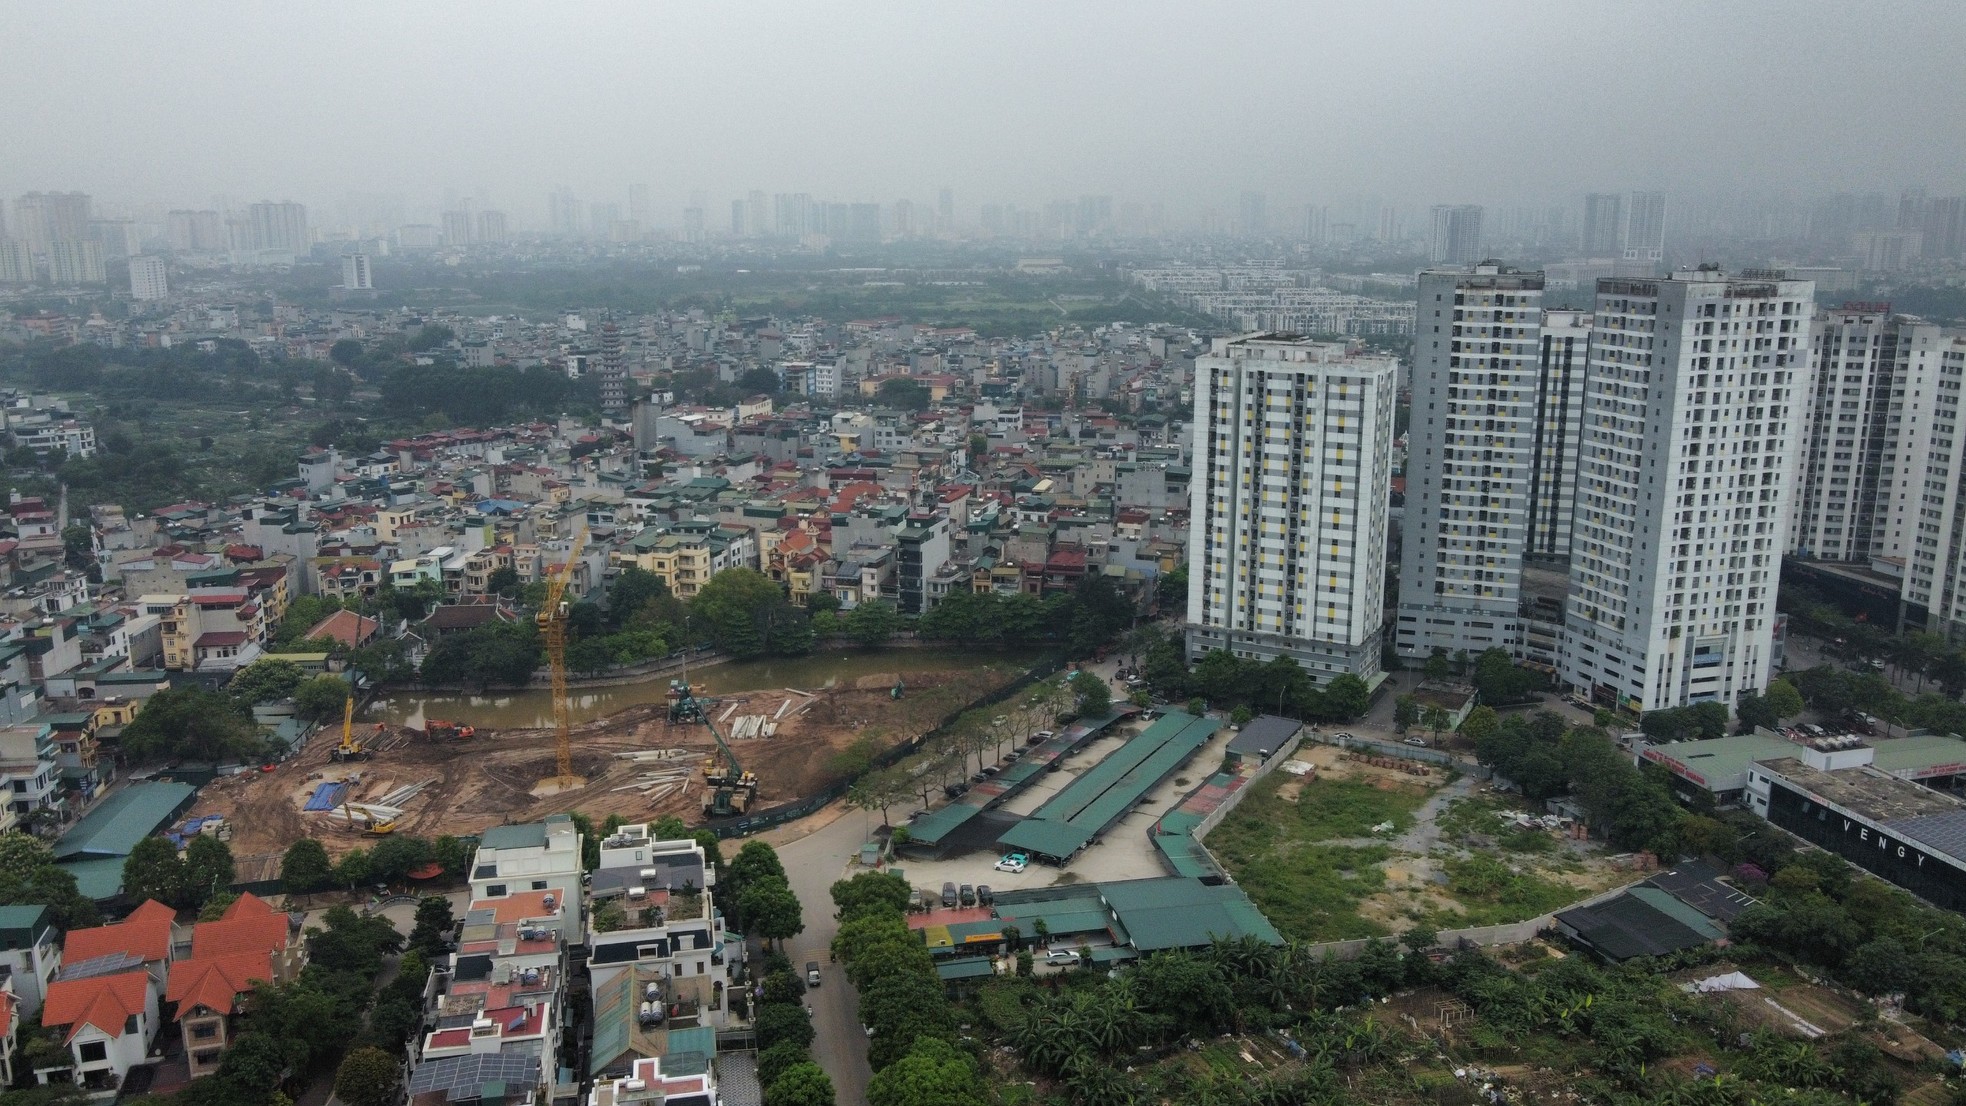 Khu đất 'mọc' bãi xe lậu nơi phường đông dân nhất Hà Nội chuẩn bị xây trường học ảnh 6